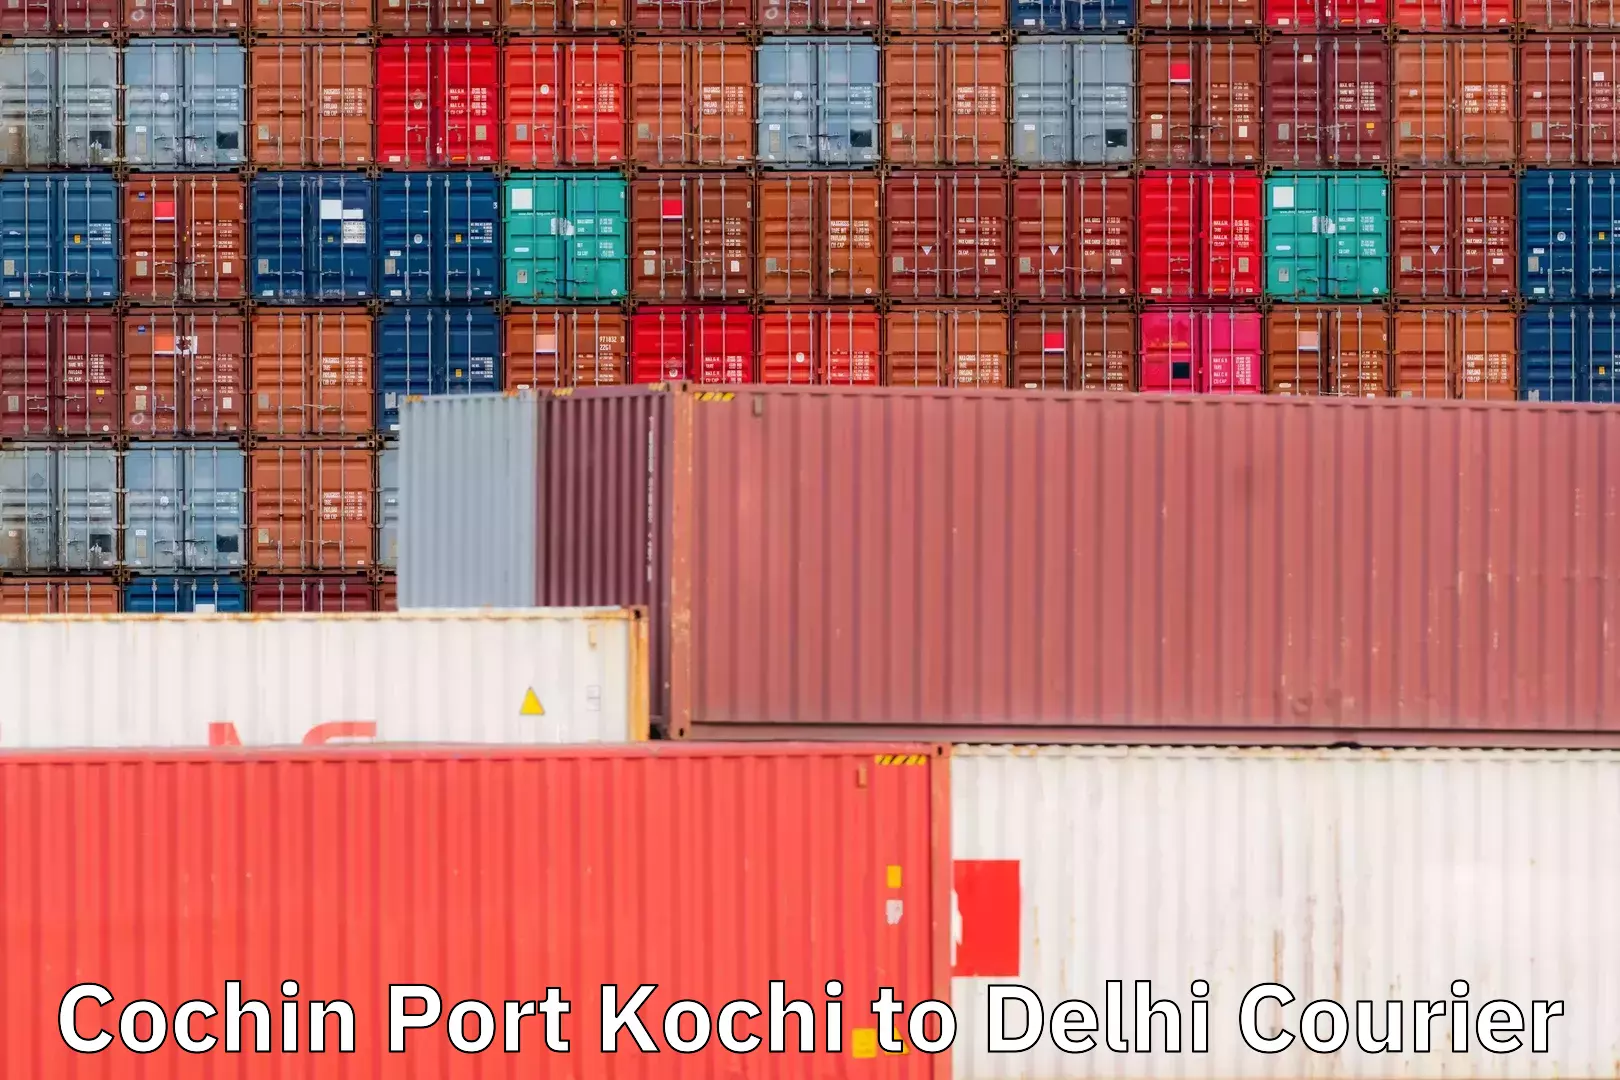 Business delivery service Cochin Port Kochi to Delhi